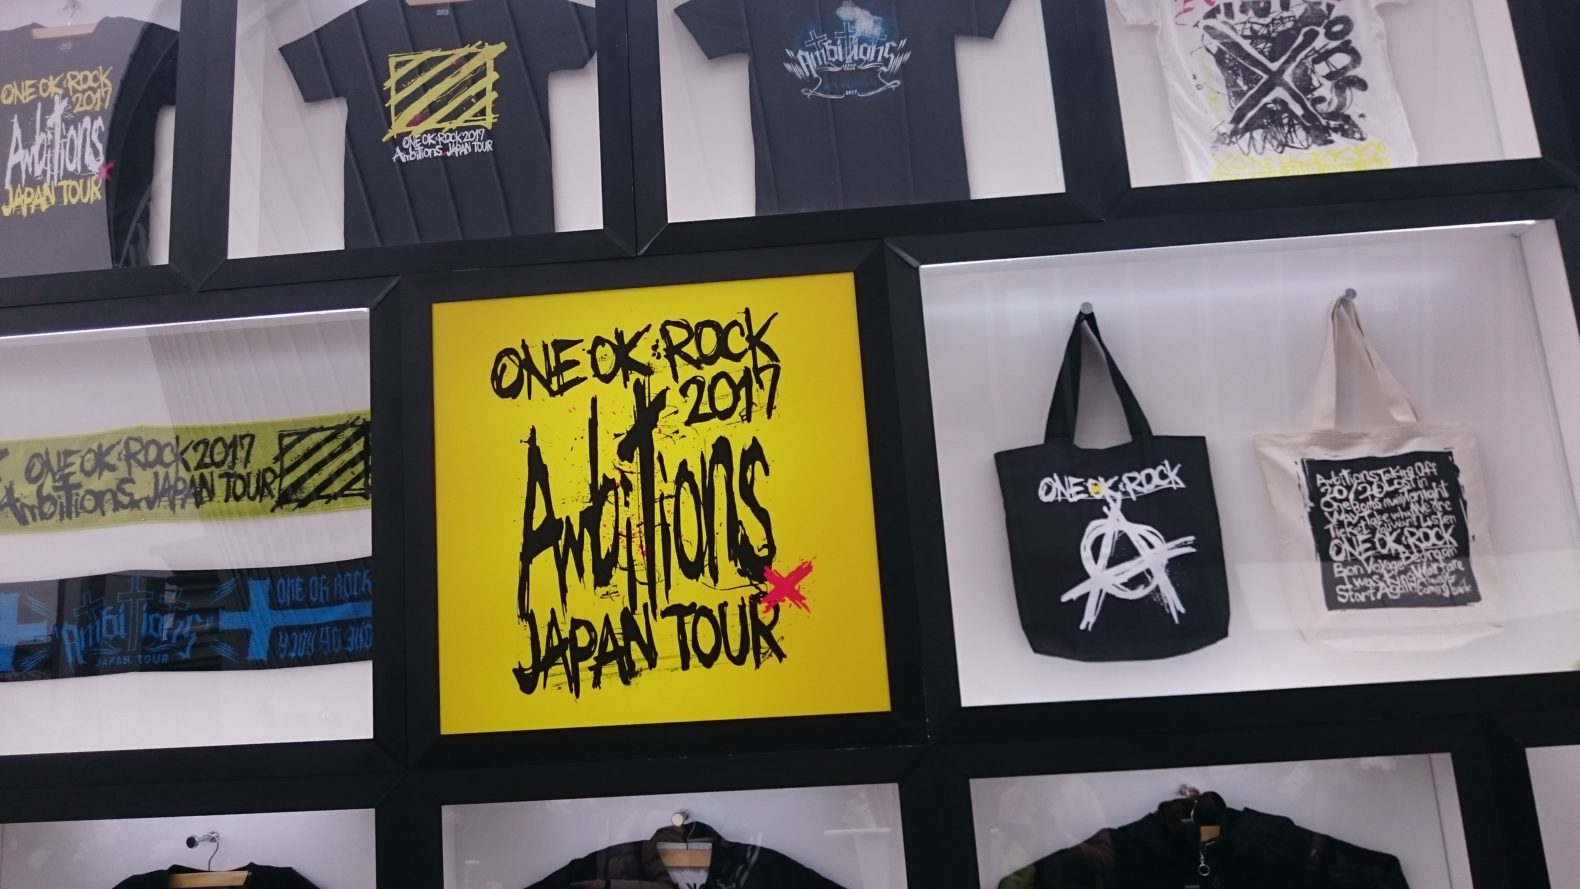 18年度版 One Ok Rock 厳選おすすめ曲ランキング 15曲 小さな一歩